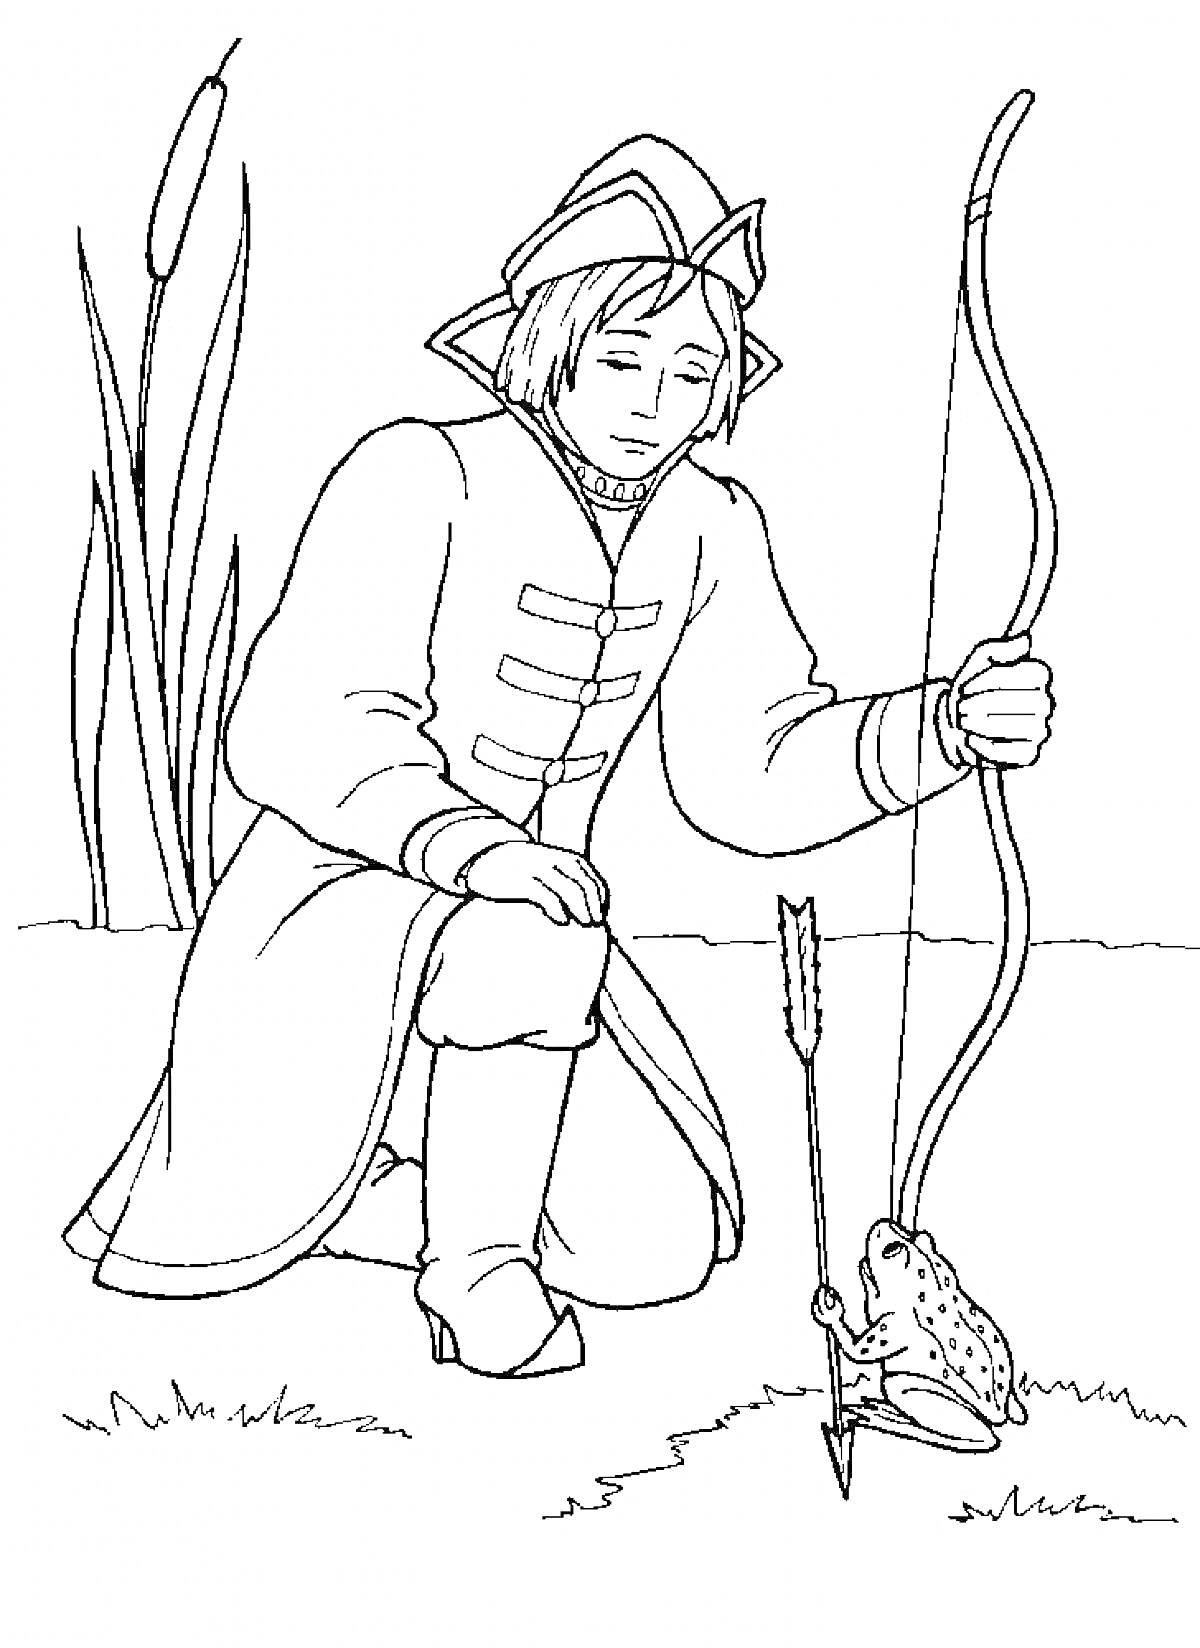 Юноша с луком и стрелой рядом с лягушкой на траве, высокие камыши на заднем плане